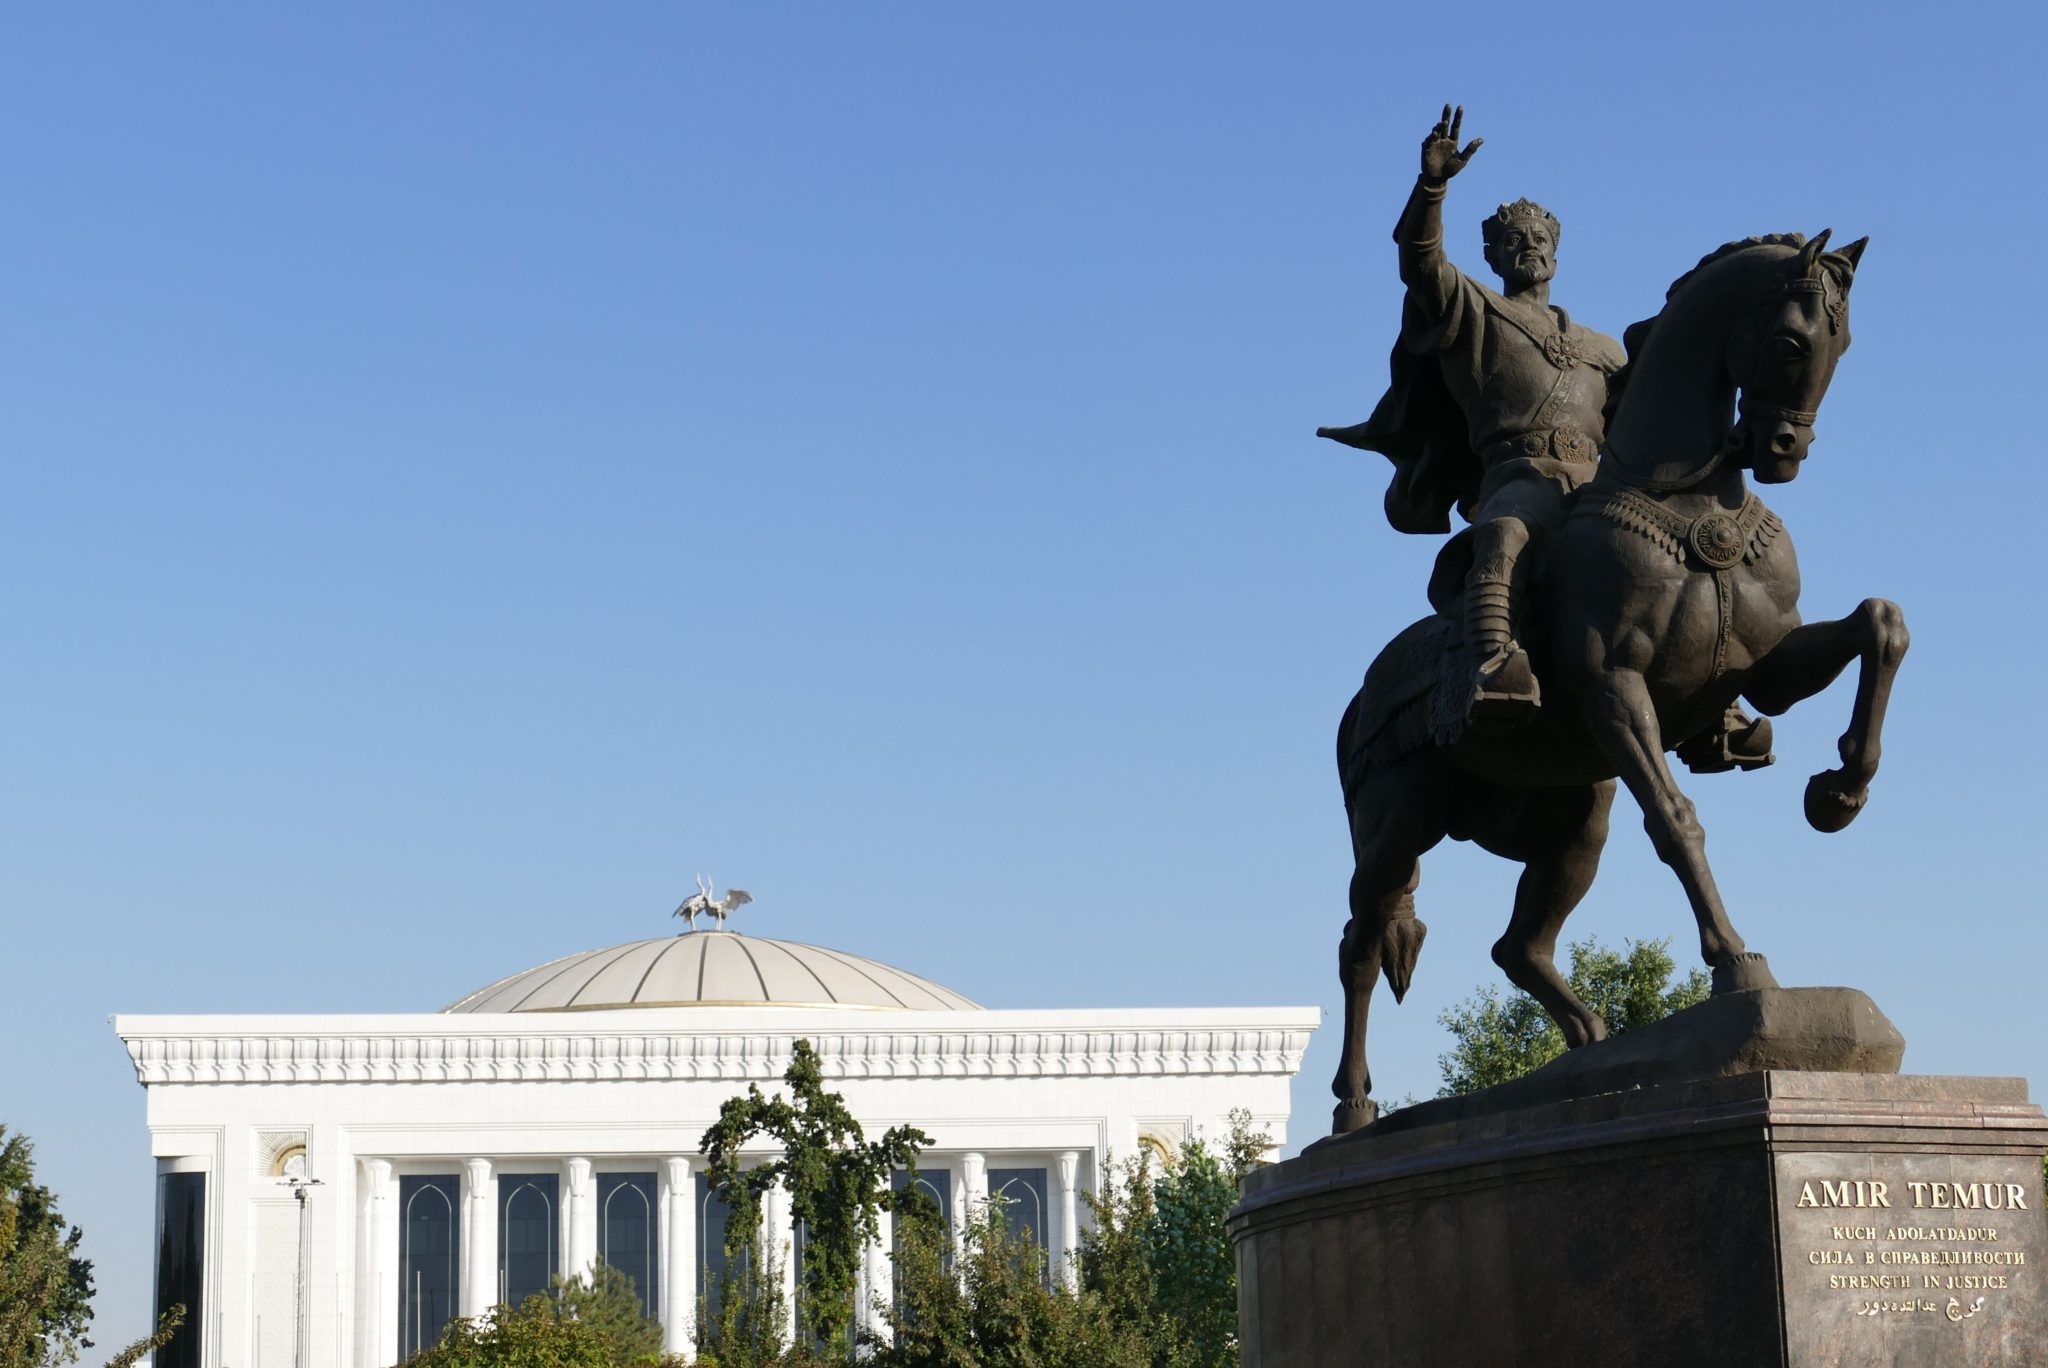 Asia centrale, trent’anni e un’eredità difficile da superare